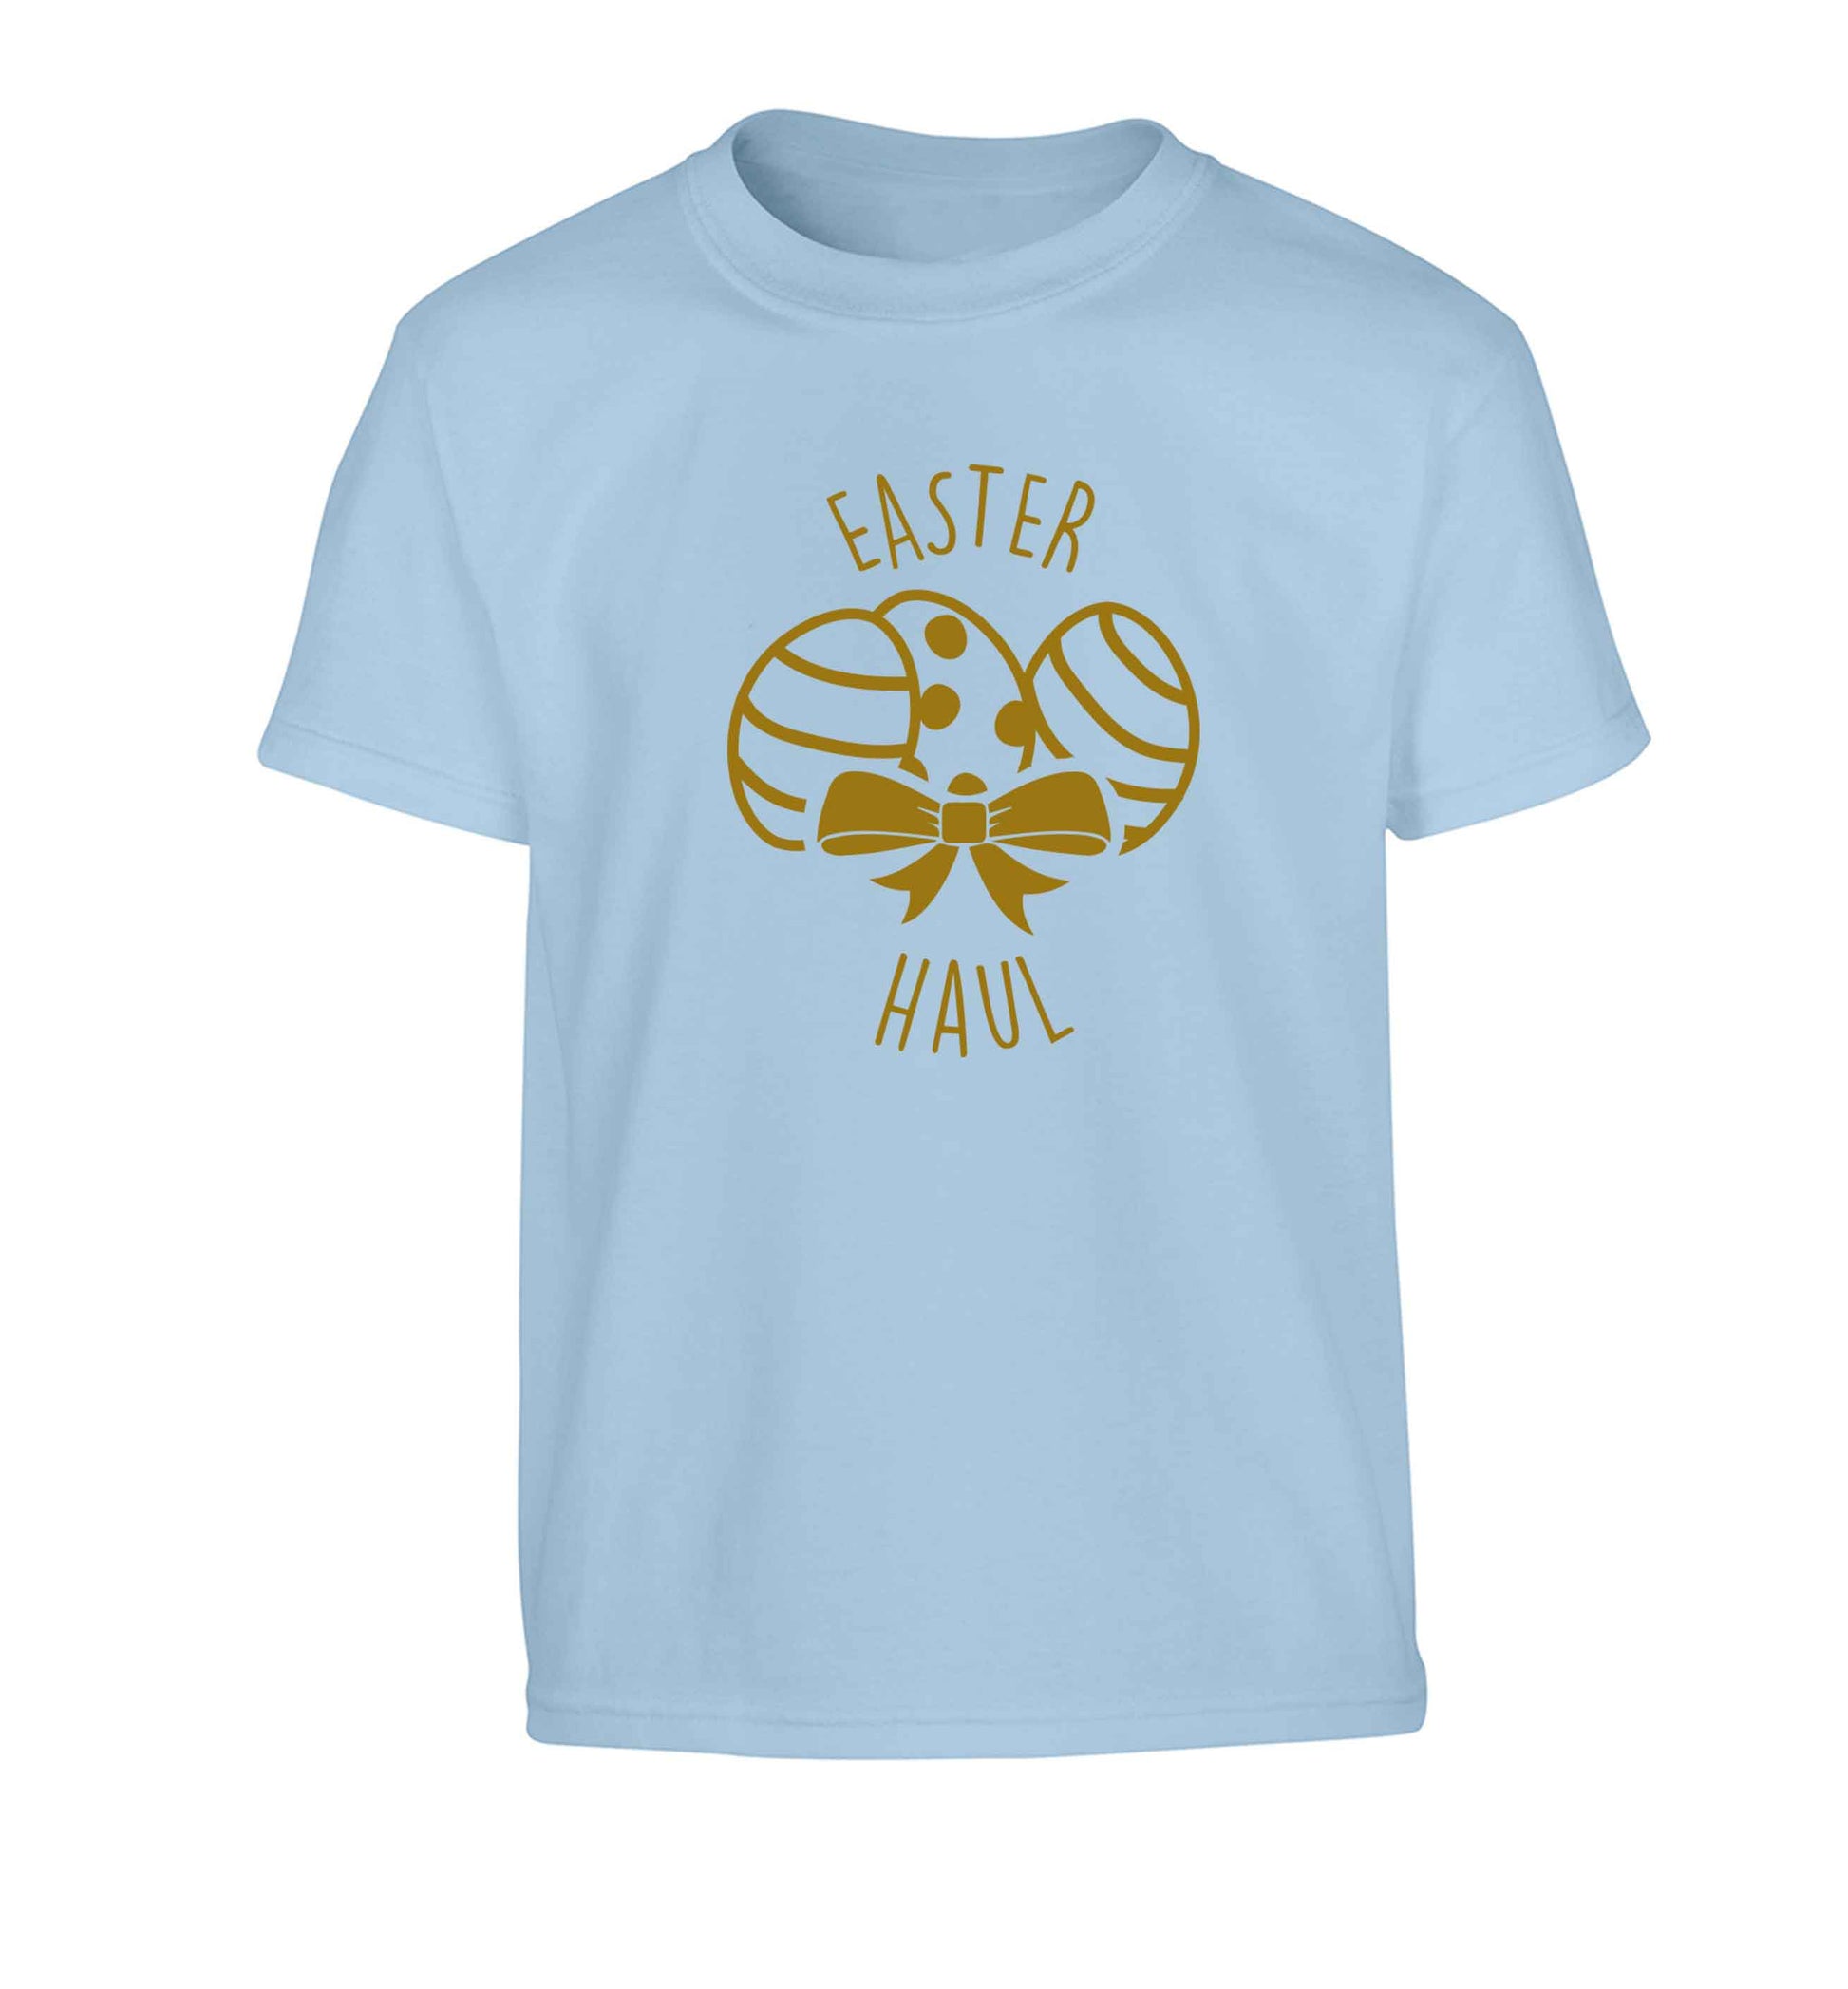 Easter haul Children's light blue Tshirt 12-13 Years